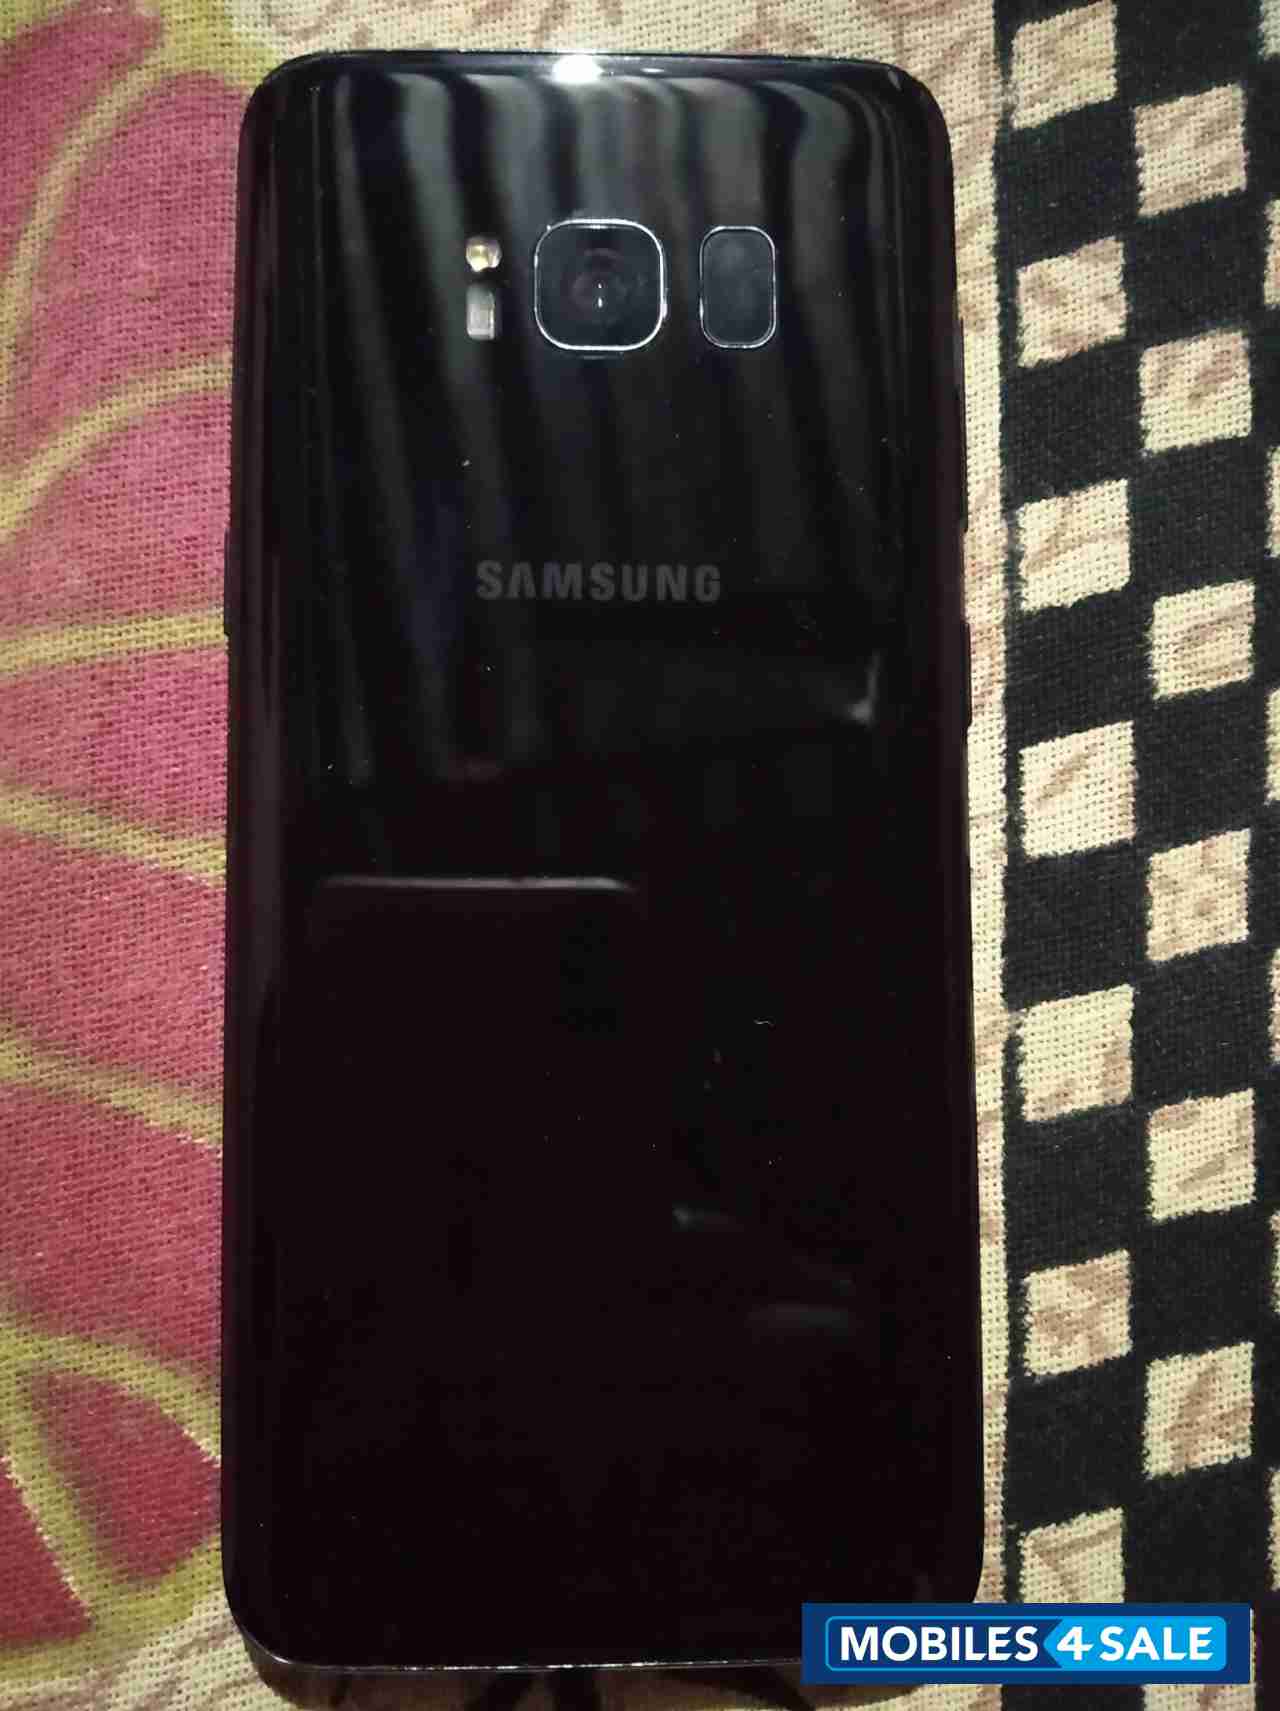 Samsung  Galaxy 8